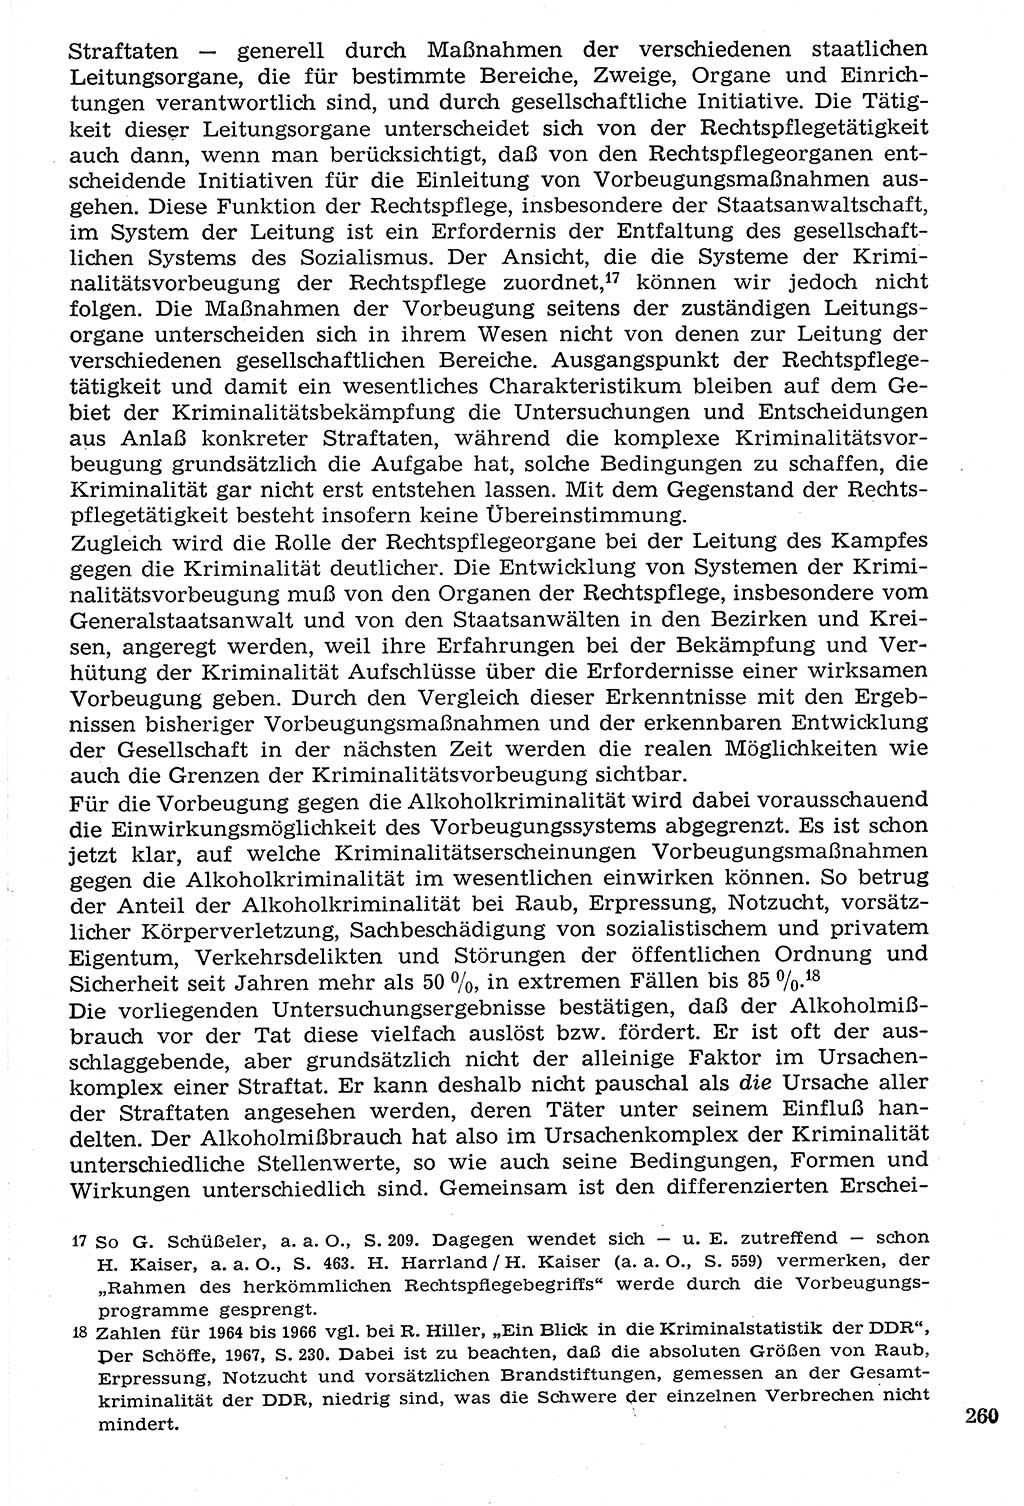 Staat und Recht (StuR), 17. Jahrgang [Deutsche Demokratische Republik (DDR)] 1968, Seite 260 (StuR DDR 1968, S. 260)